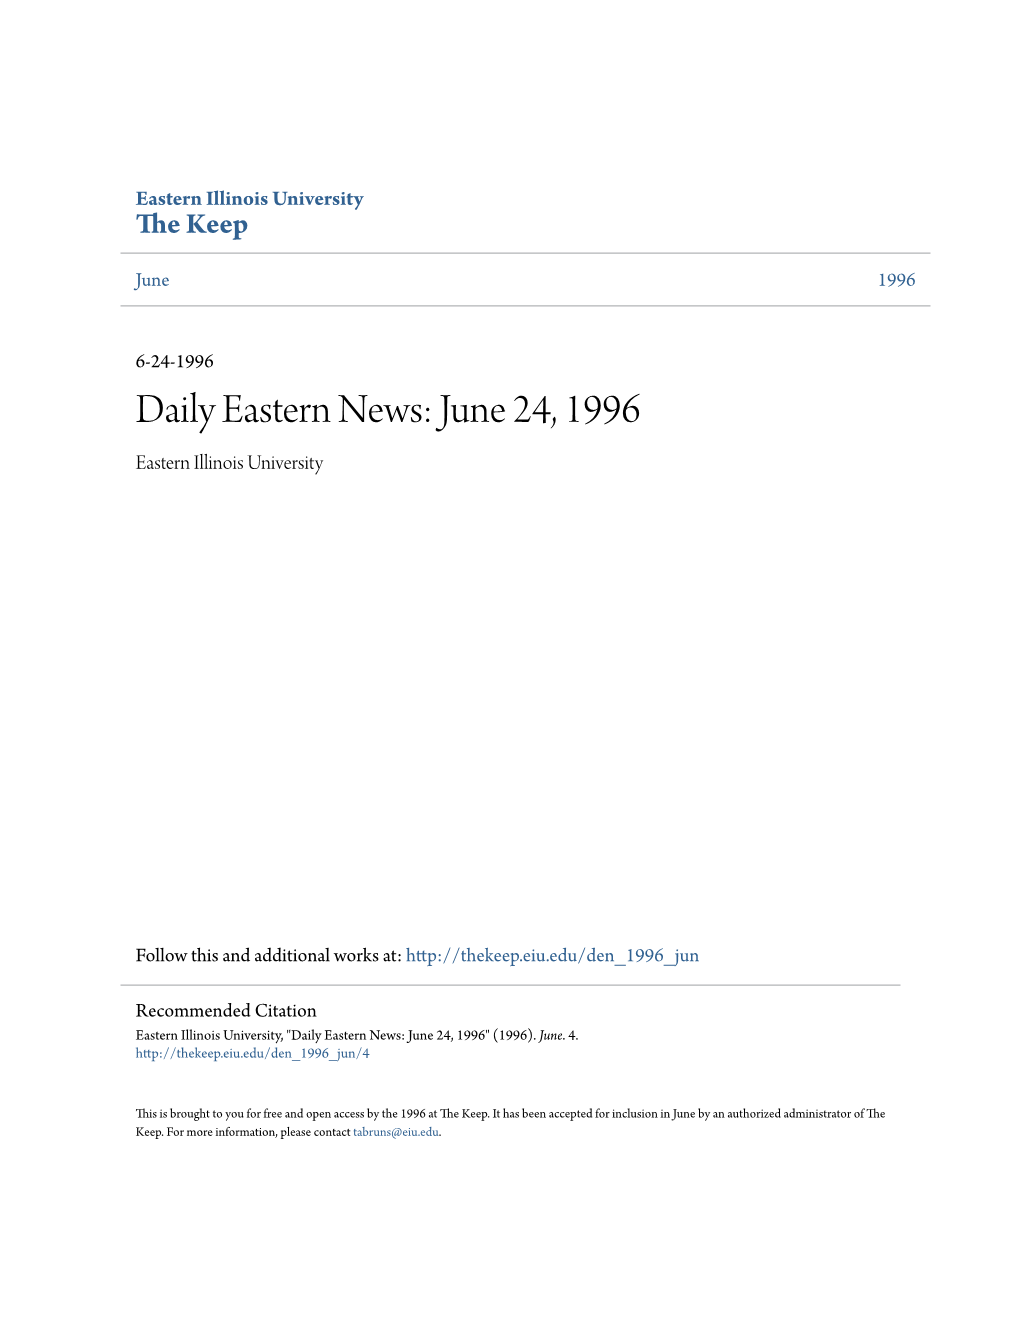 June 24, 1996 Eastern Illinois University